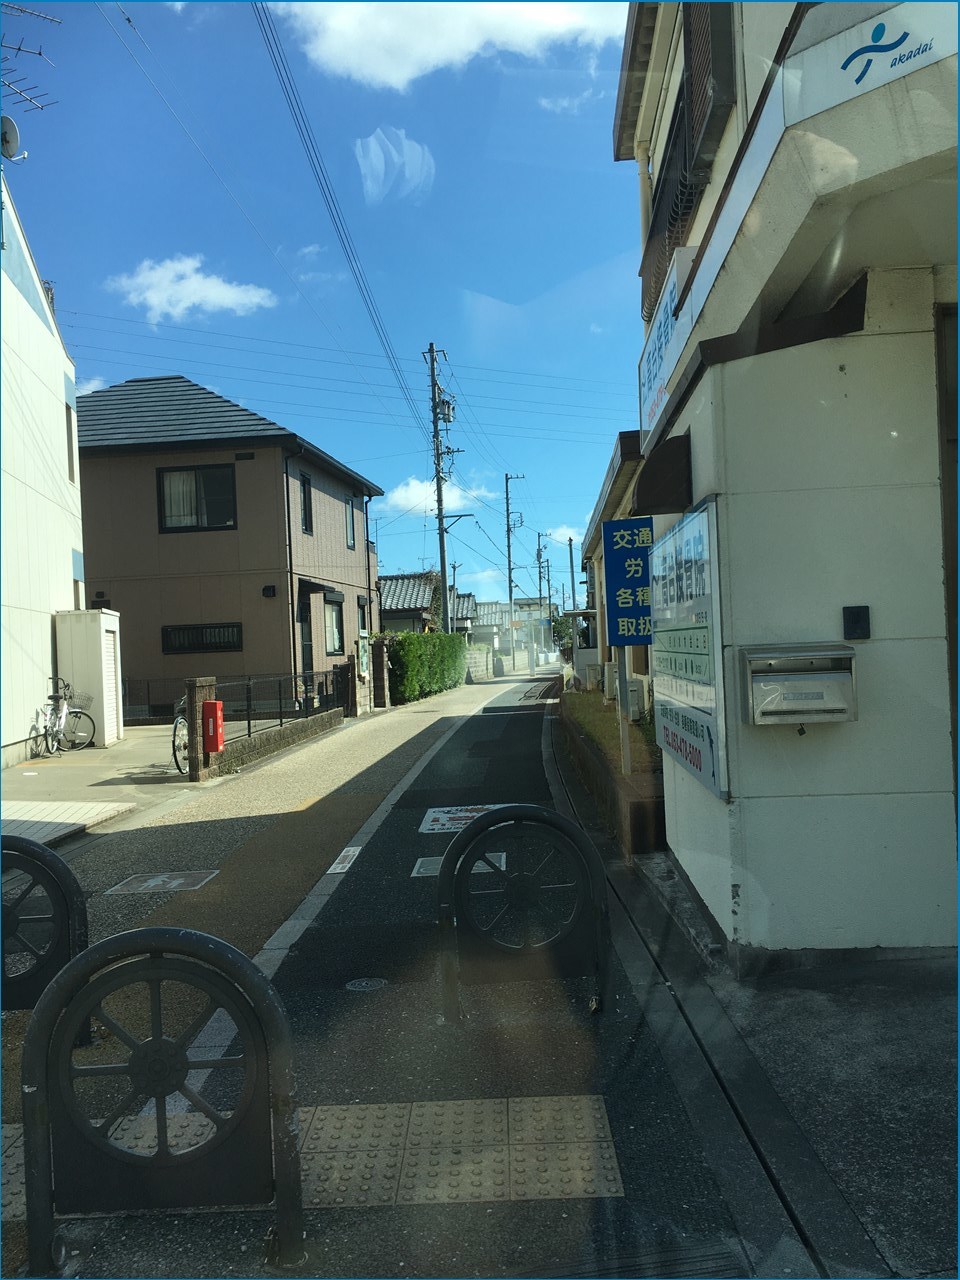 浜松軽便鉄道 奥山線の路線跡を追う_c0376508_11134093.jpg